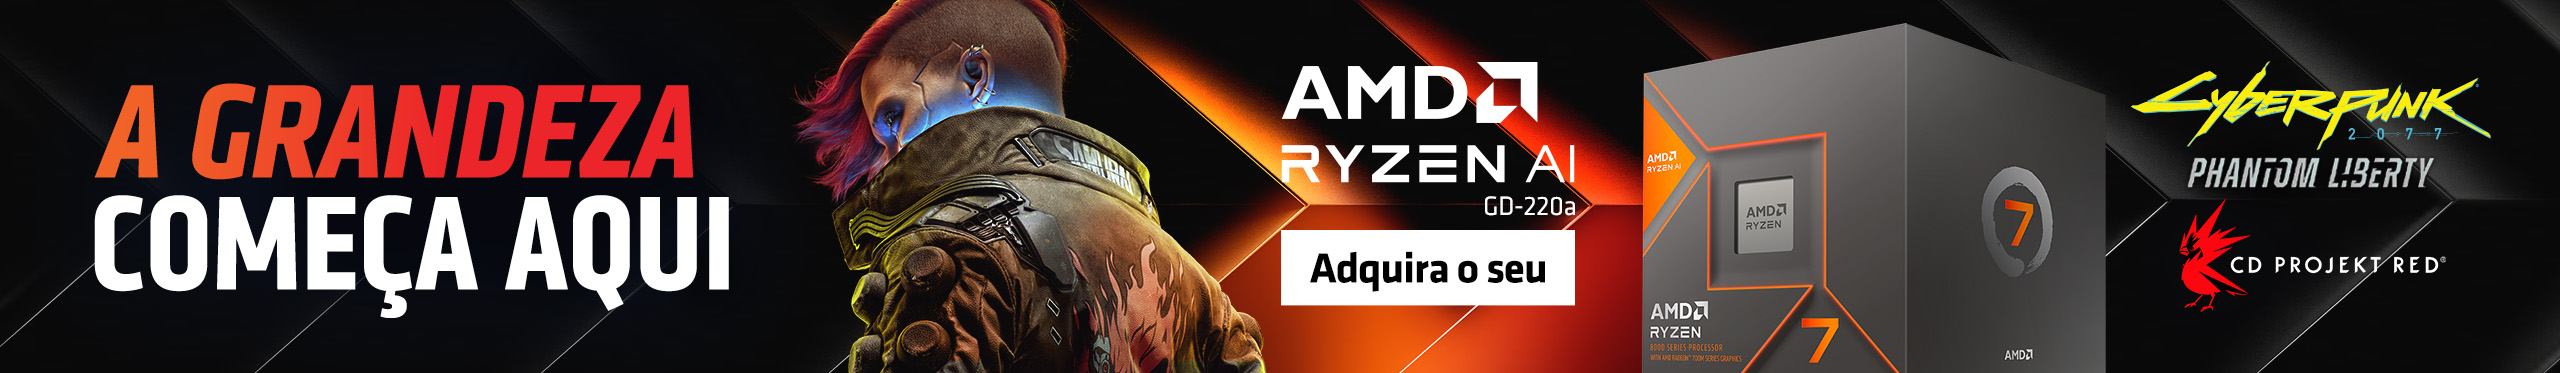 AMD | A grandeza começa com AMD Ryzen. Clica!